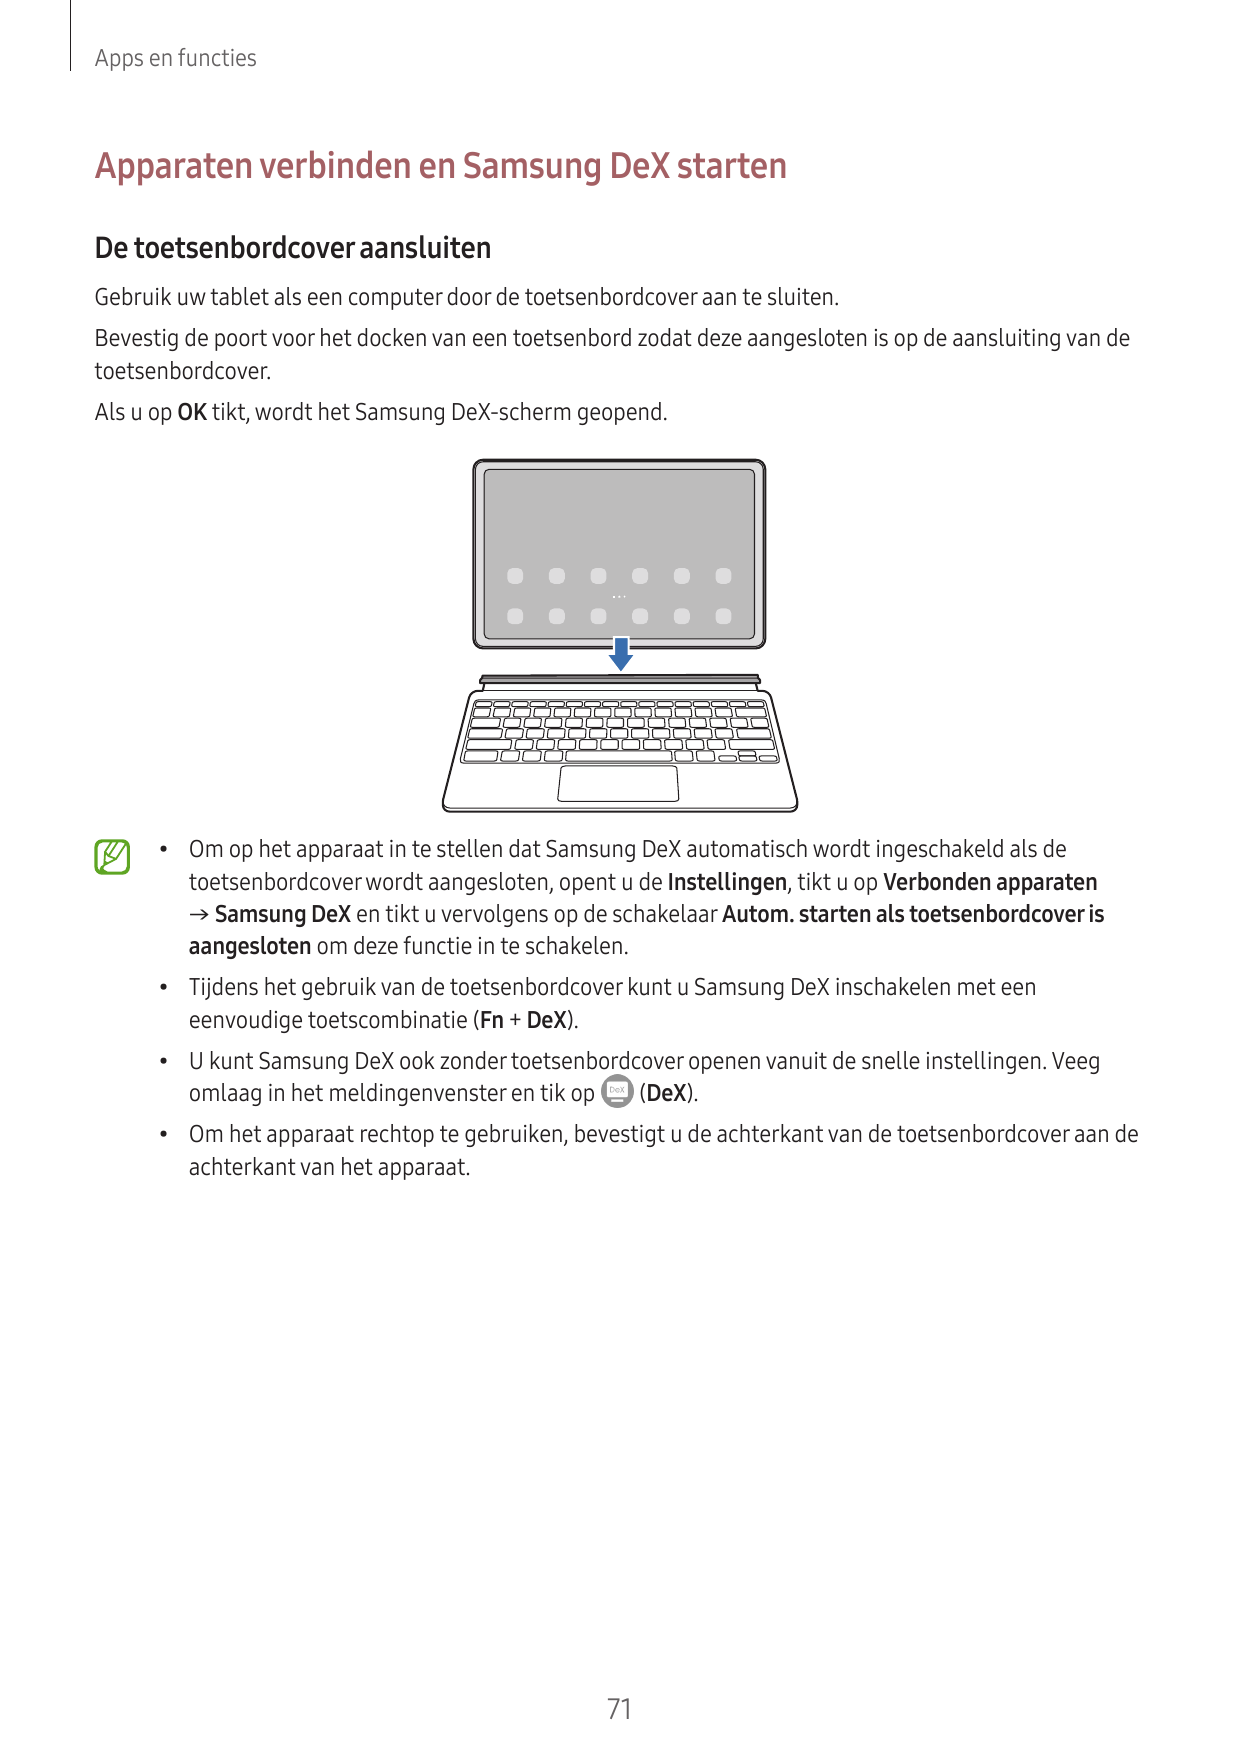 Apps en functiesApparaten verbinden en Samsung DeX startenDe toetsenbordcover aansluitenGebruik uw tablet als een computer door 